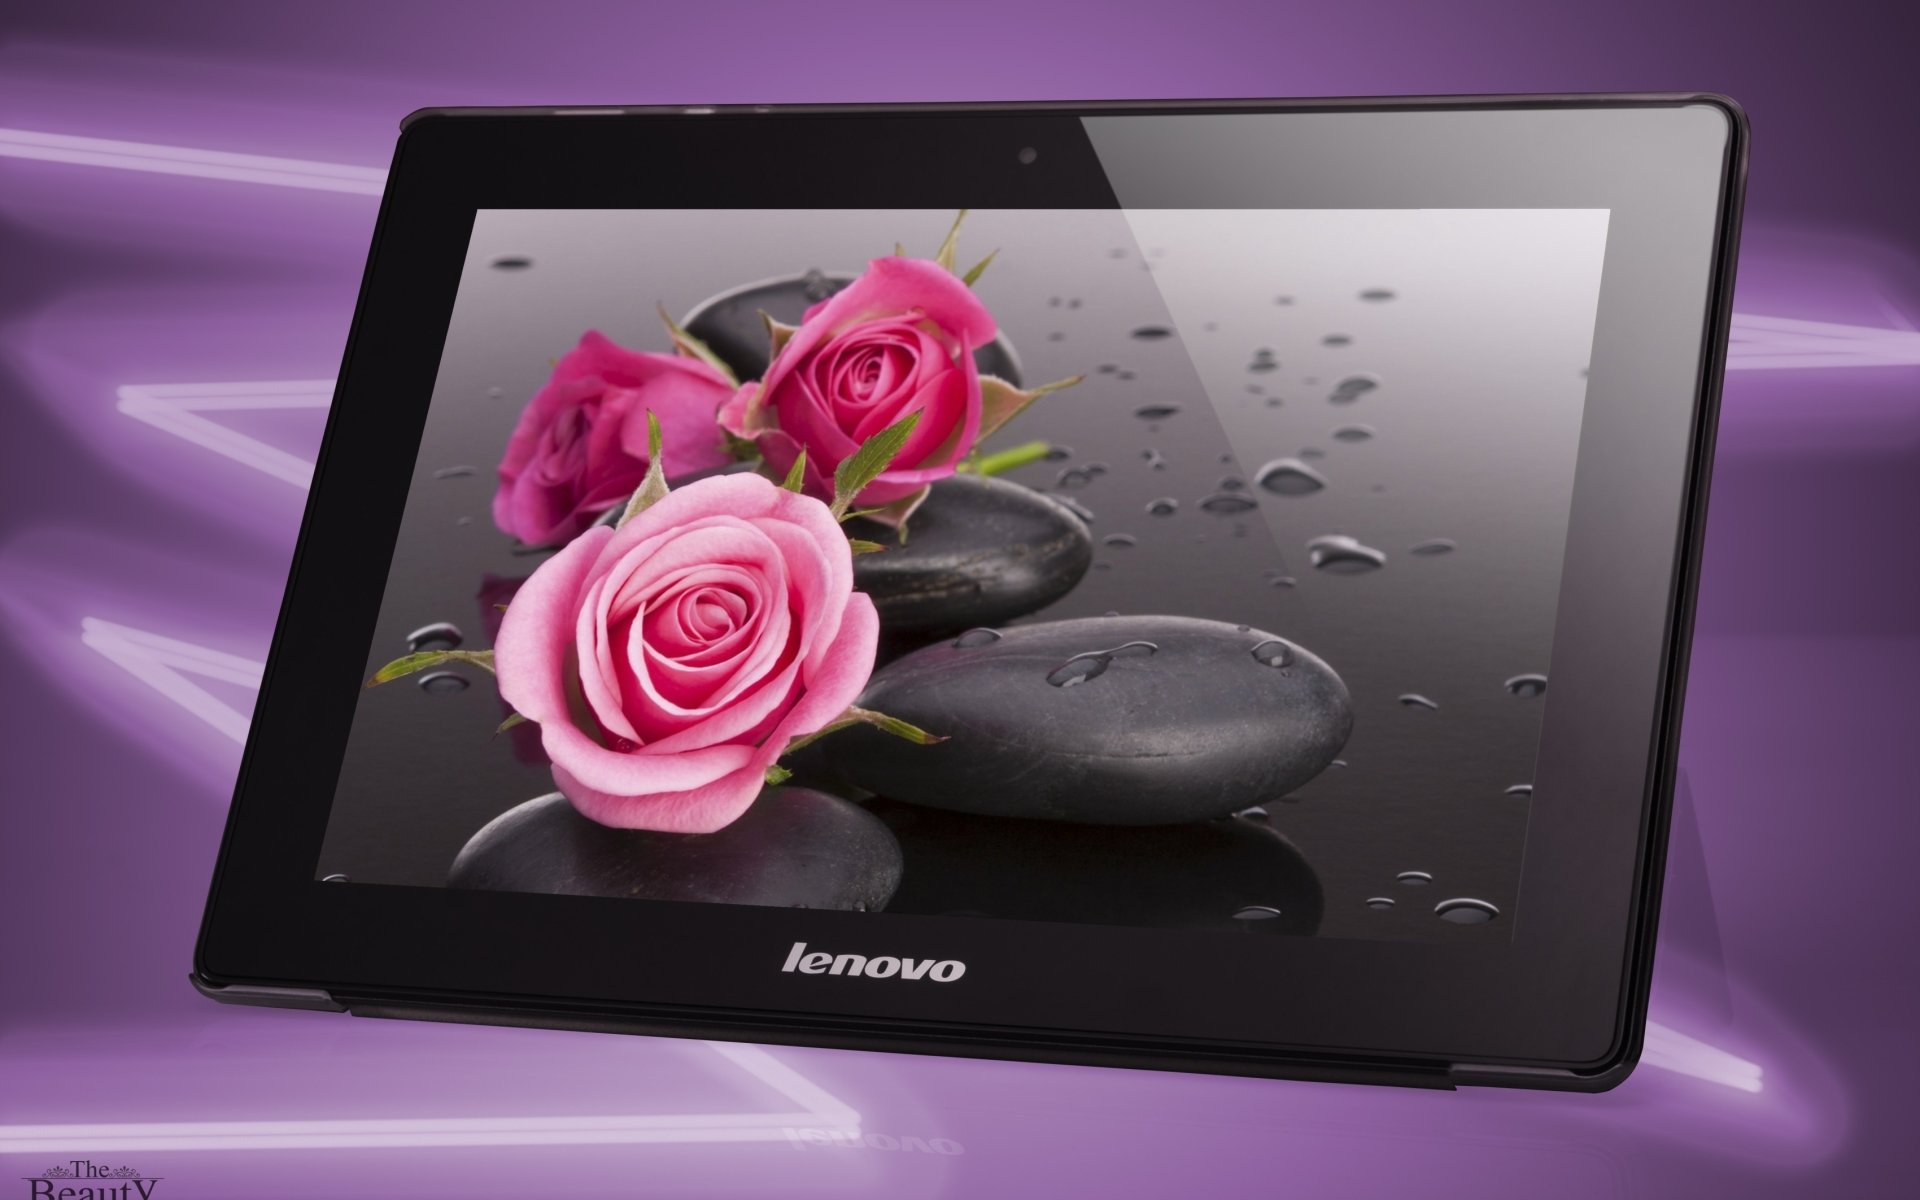 lenovo tablet wallpaper,rosa,produkt,rosenfamilie,rose,blütenblatt